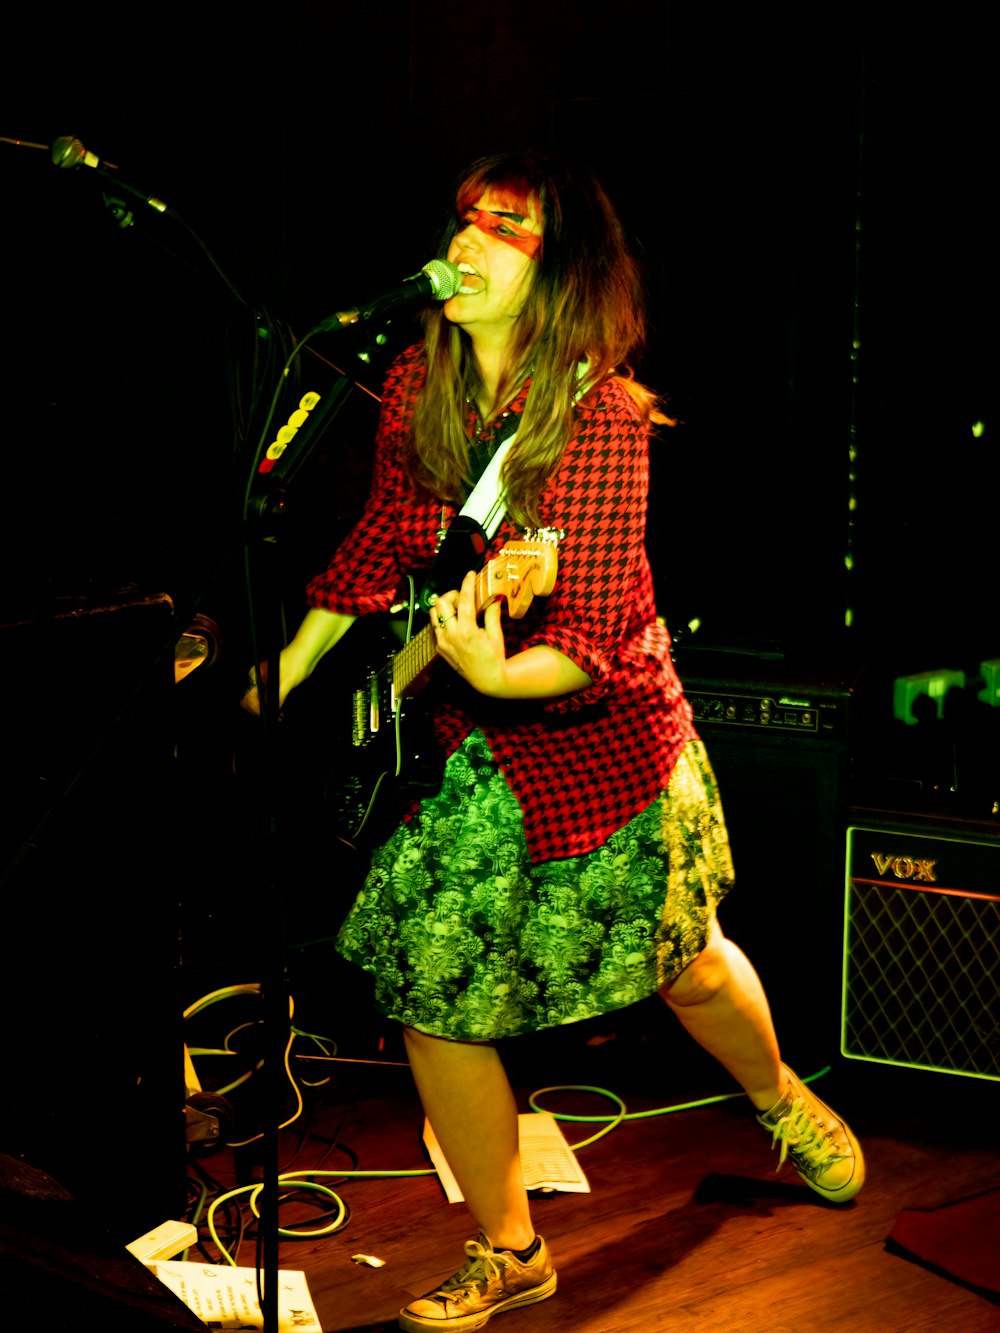 Una mujer parada en un escenario cantando en un micrófono